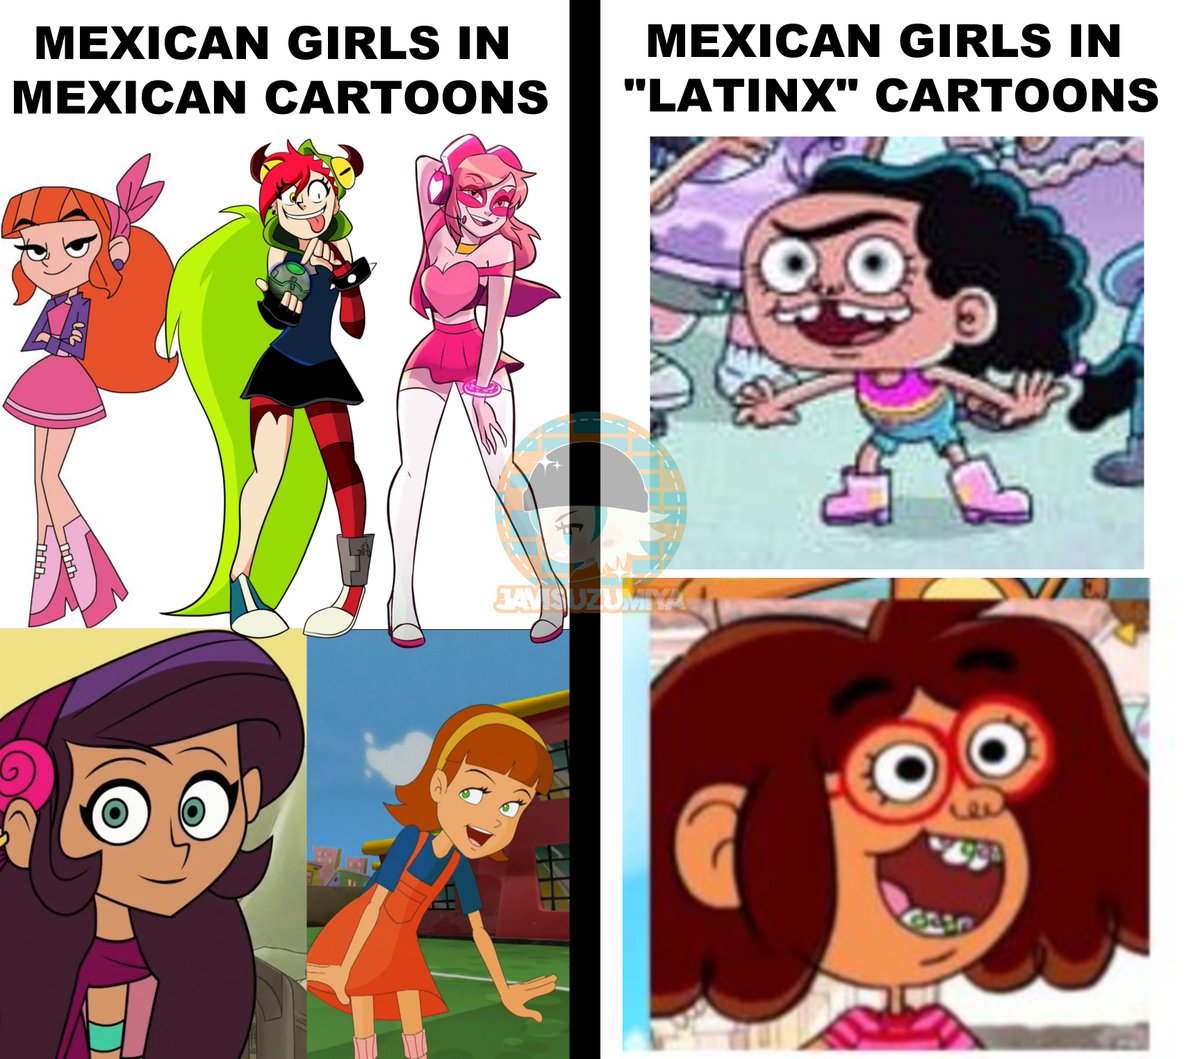 [閒聊] 墨西哥作品和米國作品會出現的墨西哥女孩